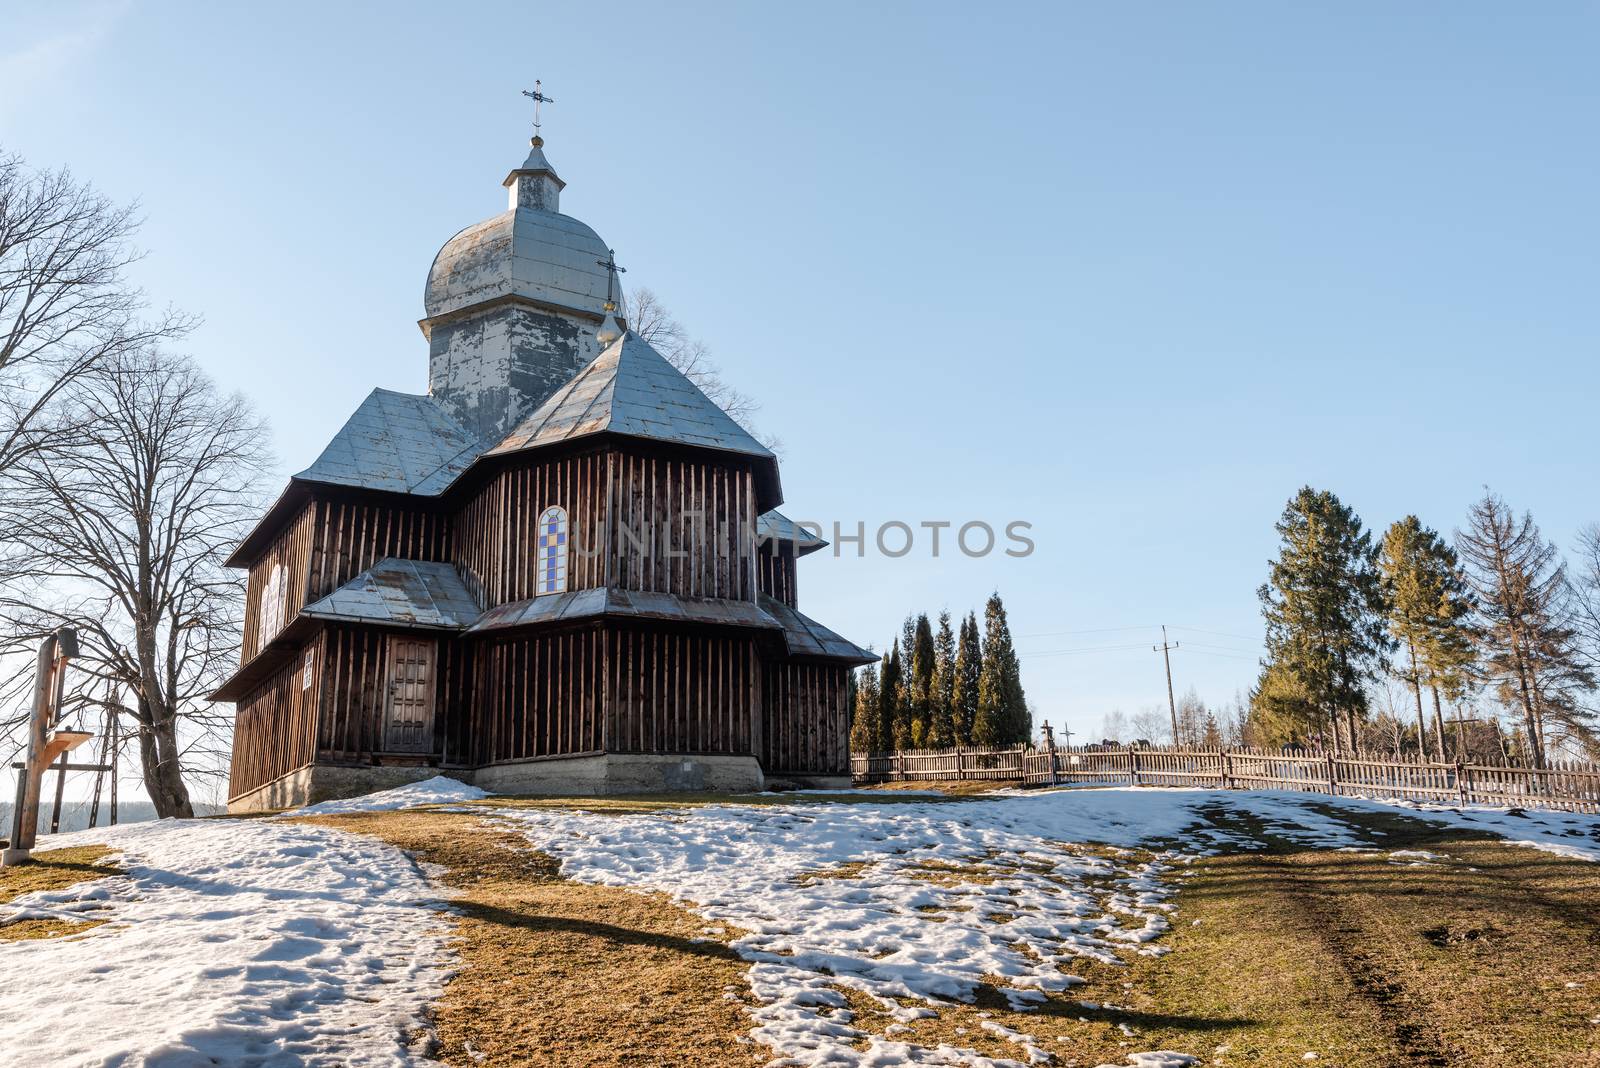 Exterior of Hoszowczyk Wooden Orthodox Church.  Bieszczady Architecture in Winter. Carpathia Region in Poland.